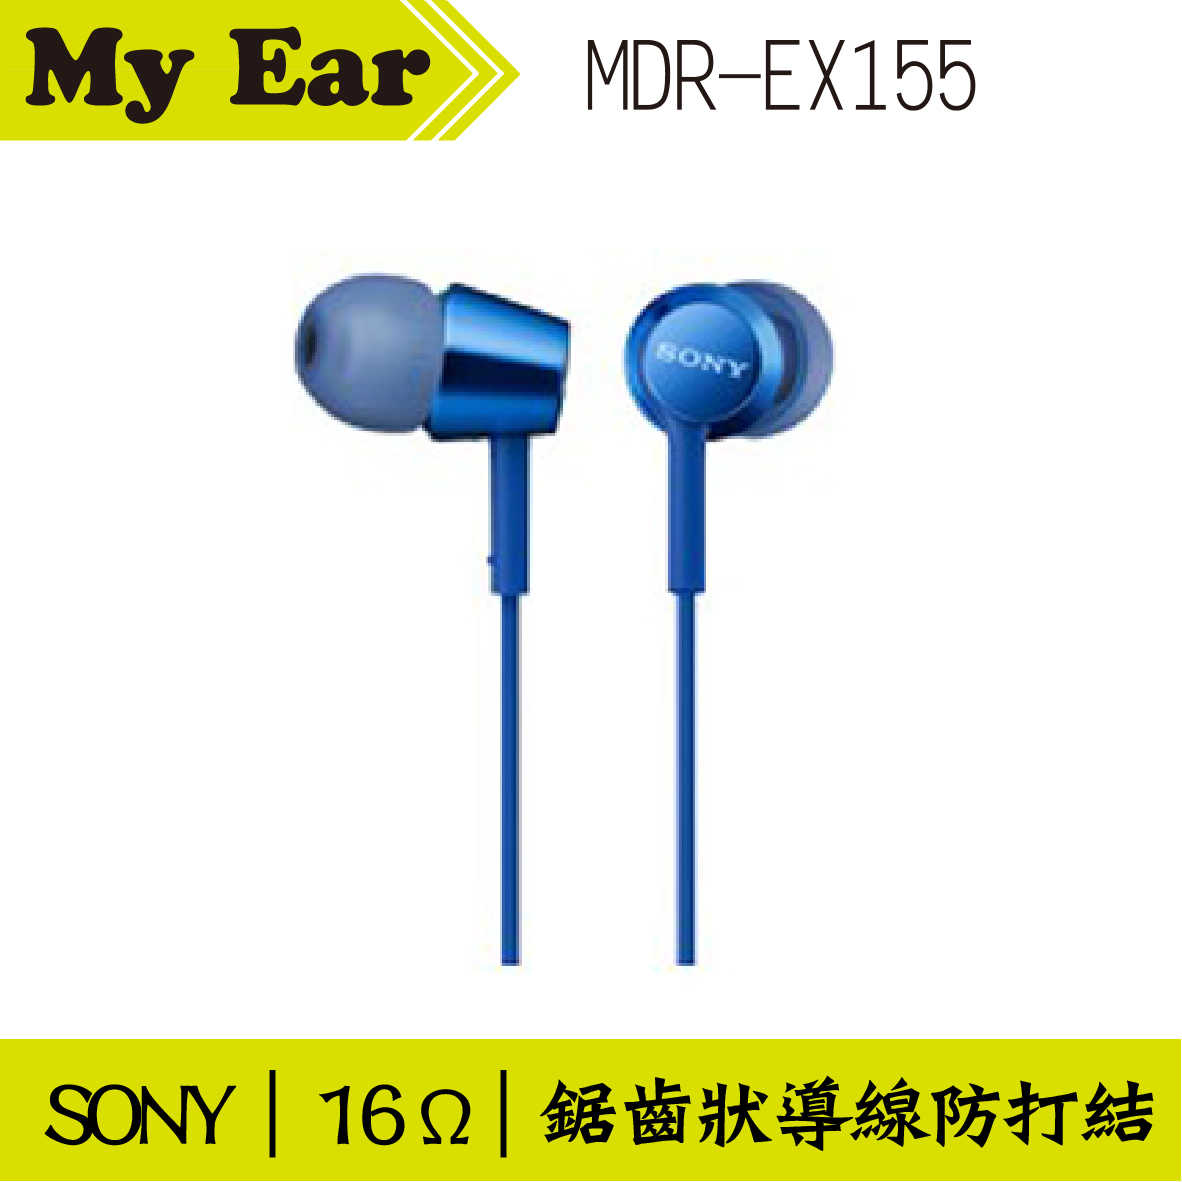 SONY MDR-EX155 入耳式立體聲耳機 藍色 | My Ear 耳機專門店